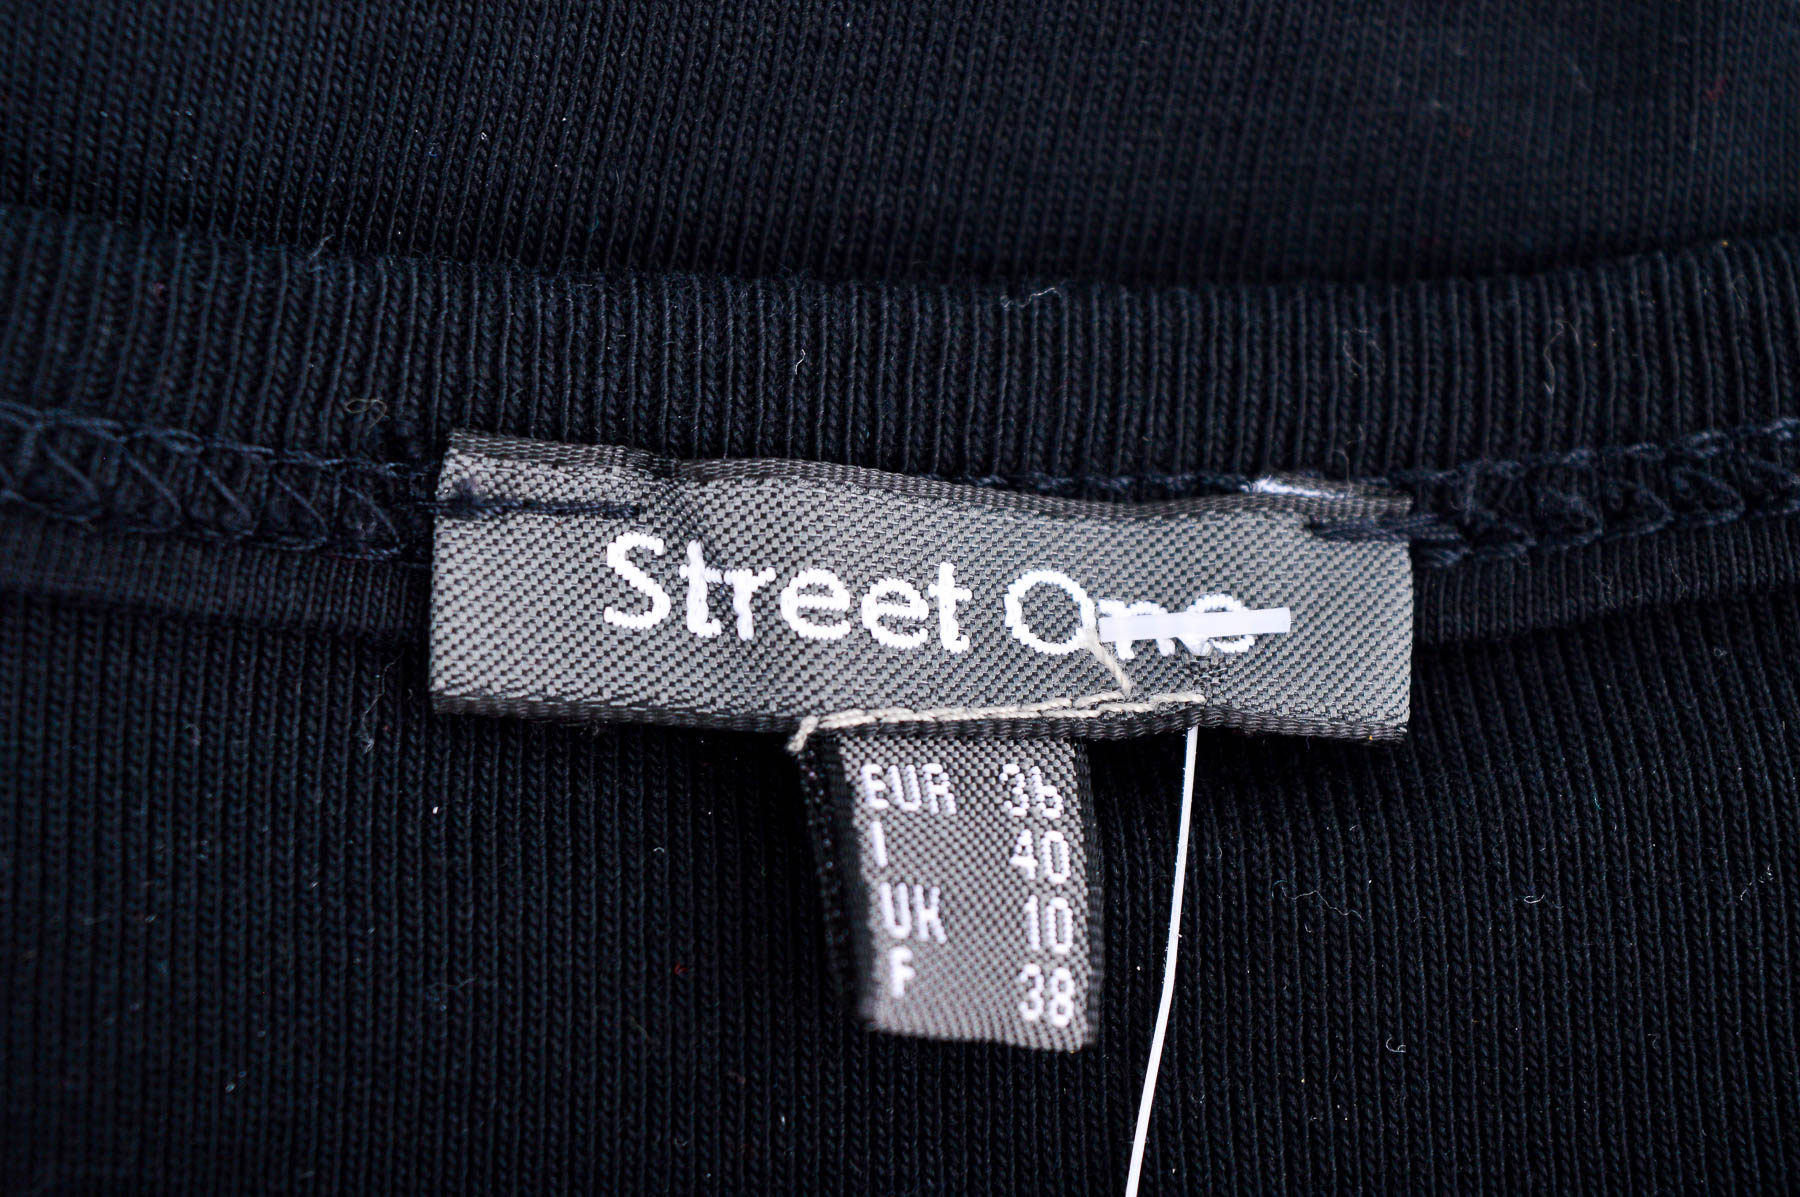 Cardigan / Jachetă de damă - Street One - 2